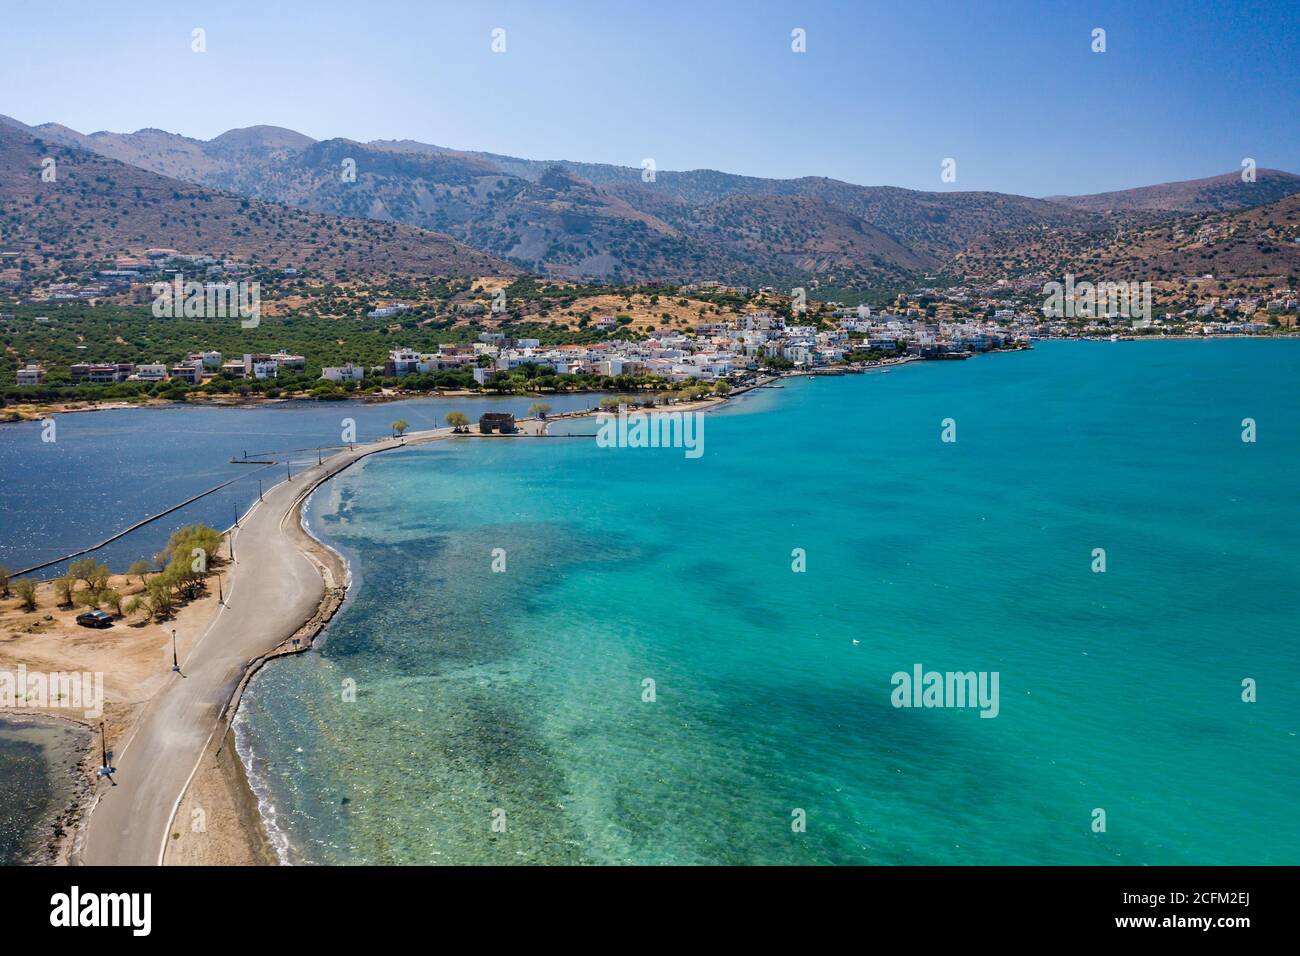 Vista aérea que muestra la calzada que conecta Elounda con la isla de Kolokitha junto con los restos de la ciudad minoica de Olous (Creta, Grecia) Foto de stock